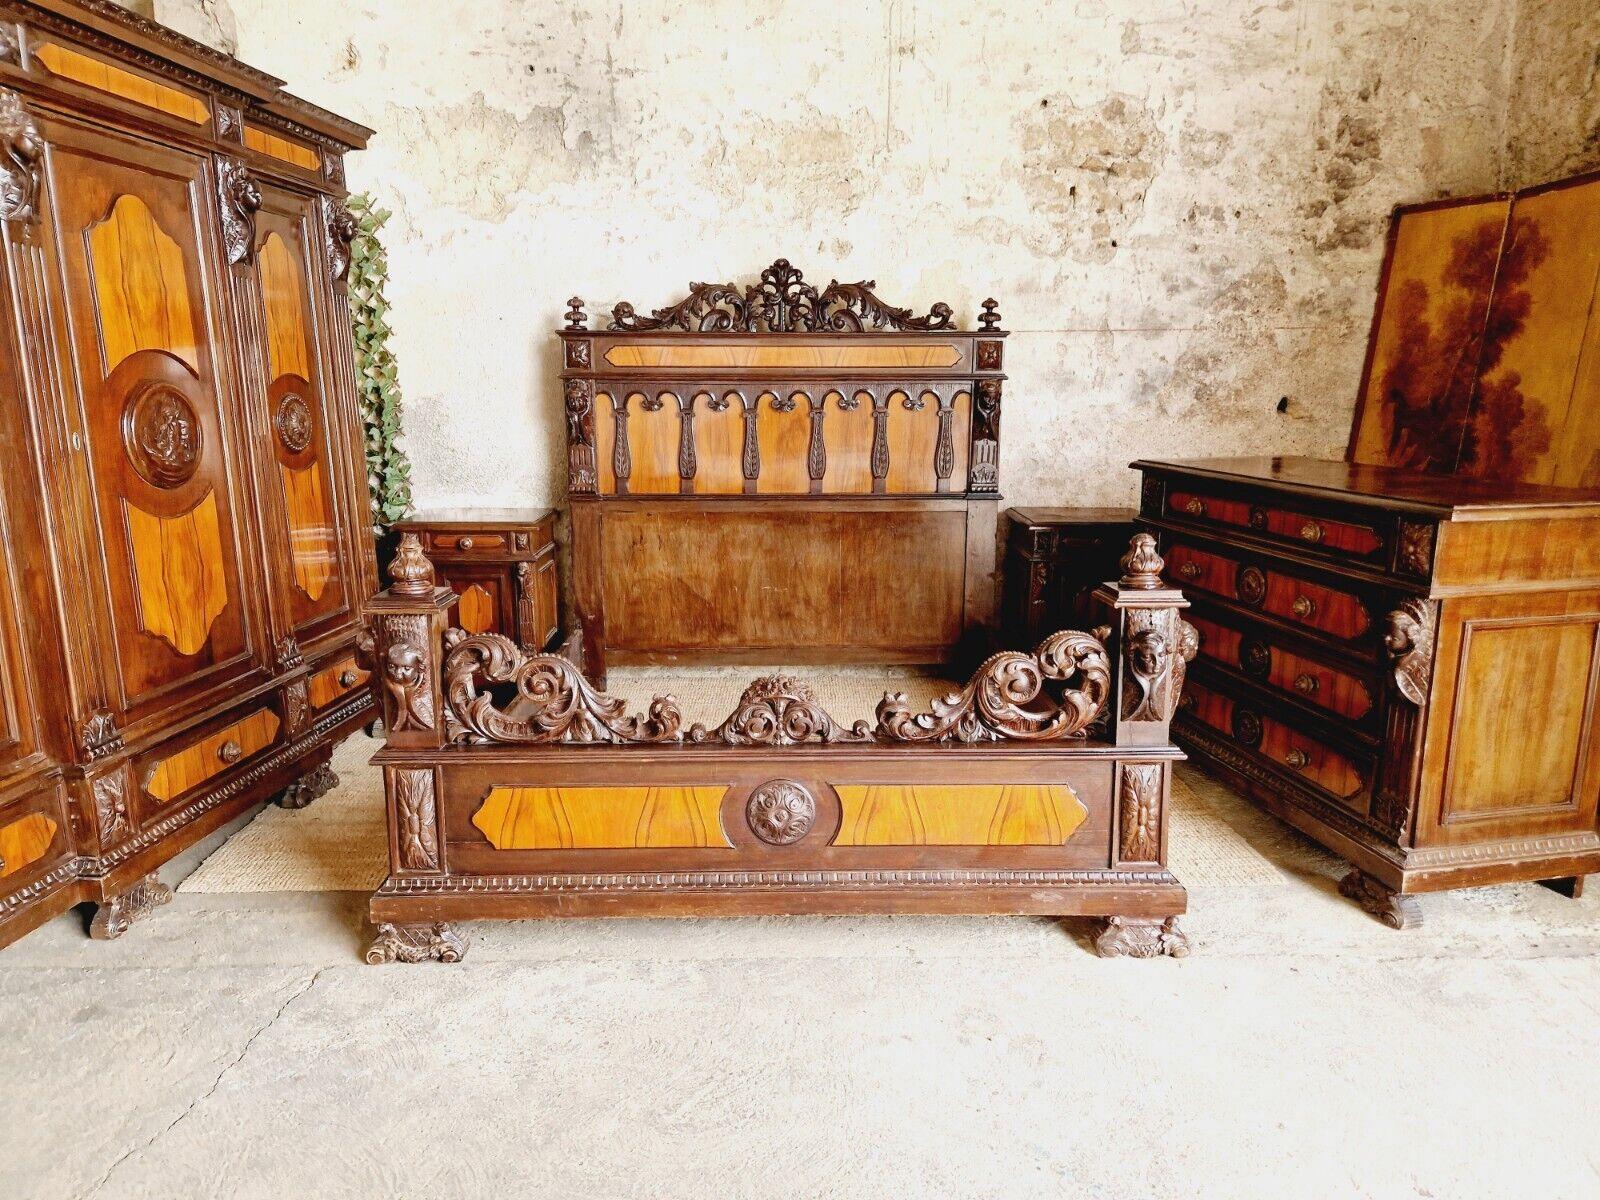 Cet exquis ensemble de chambre à coucher 5 pièces comprend un magnifique lit king-size avec une impressionnante tête et un pied de lit de style Renaissance, fabriqués dans un magnifique bois d'acajou. Le lit est orné de fabuleux chérubins putti